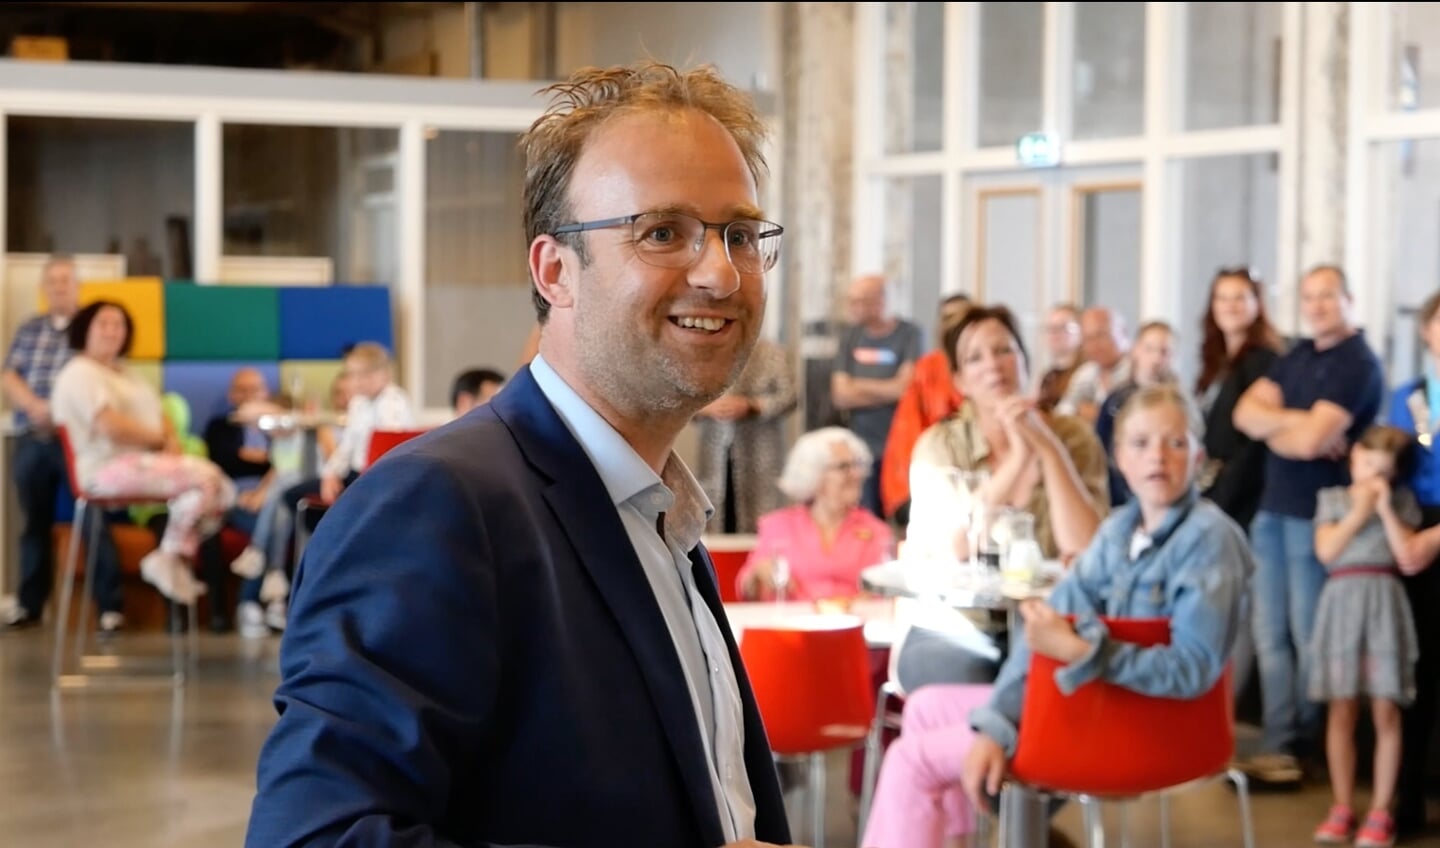 Menno Roozendaal is de lijsttrekker van de Pvda-GroenLinks.